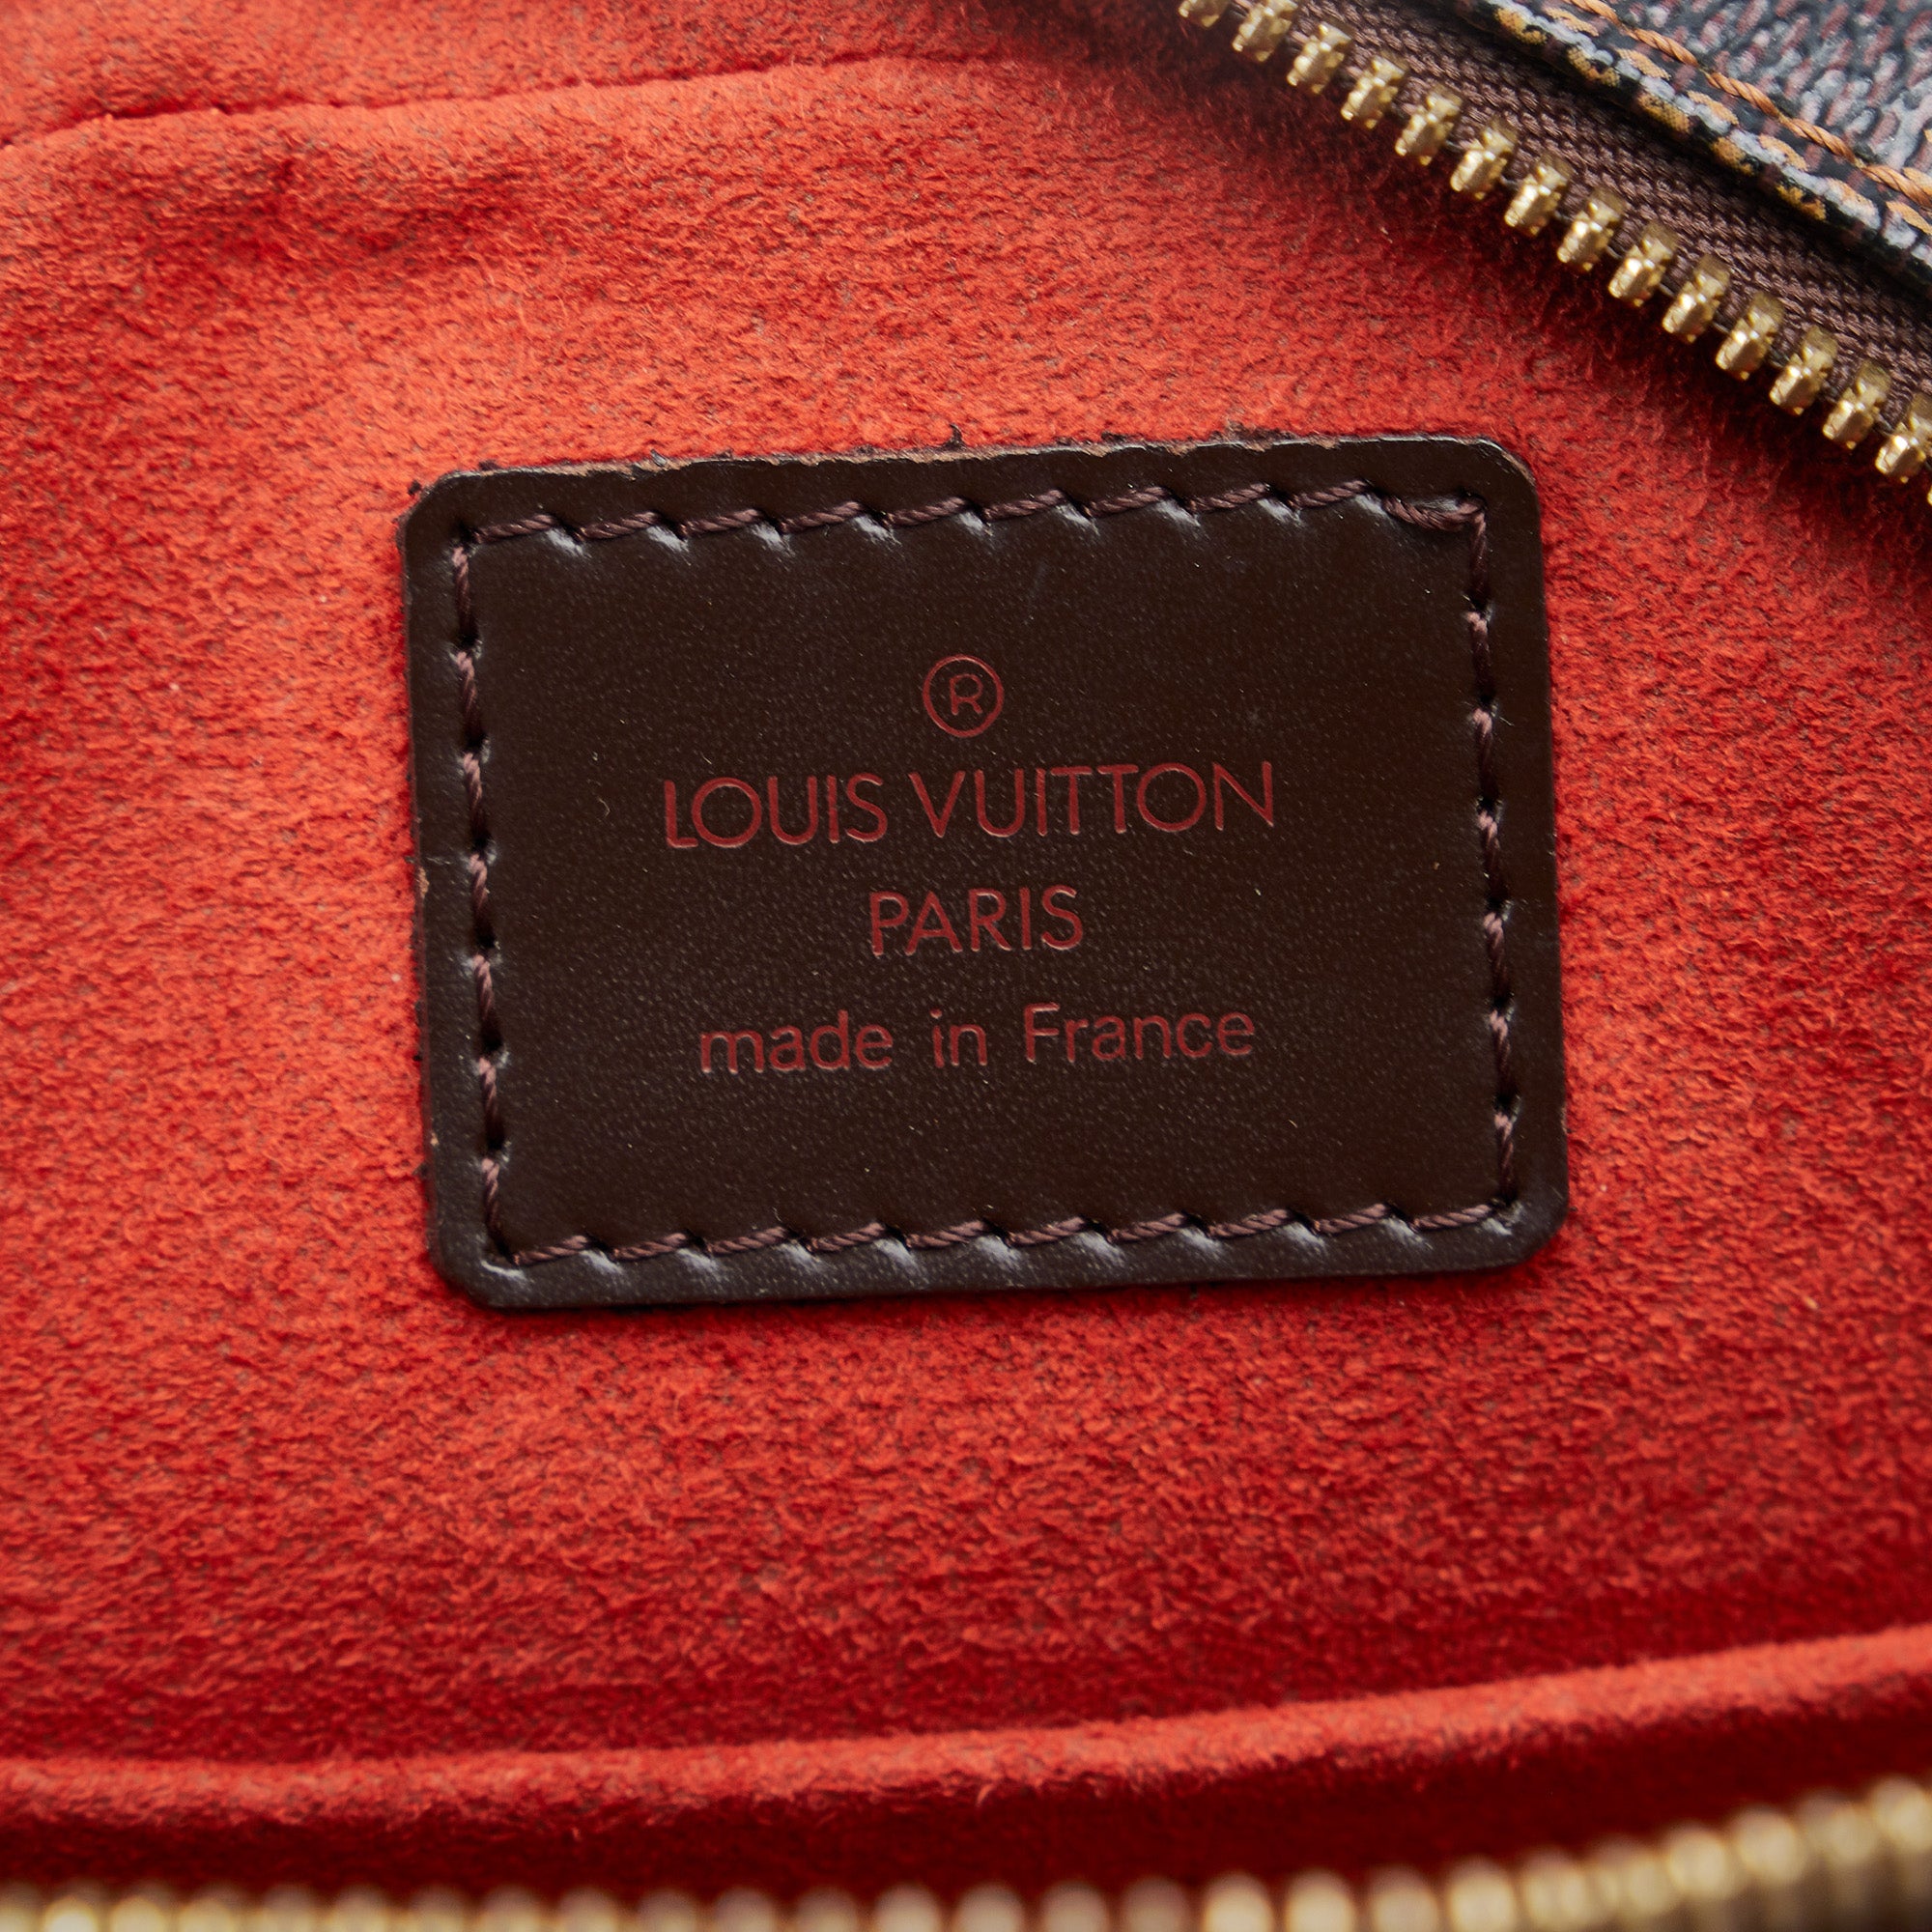 LOUIS VUITTON Louis Vuitton Ipanema PM N51294 Damier Canvas Brown VI0013  Women's Shoulder Bag